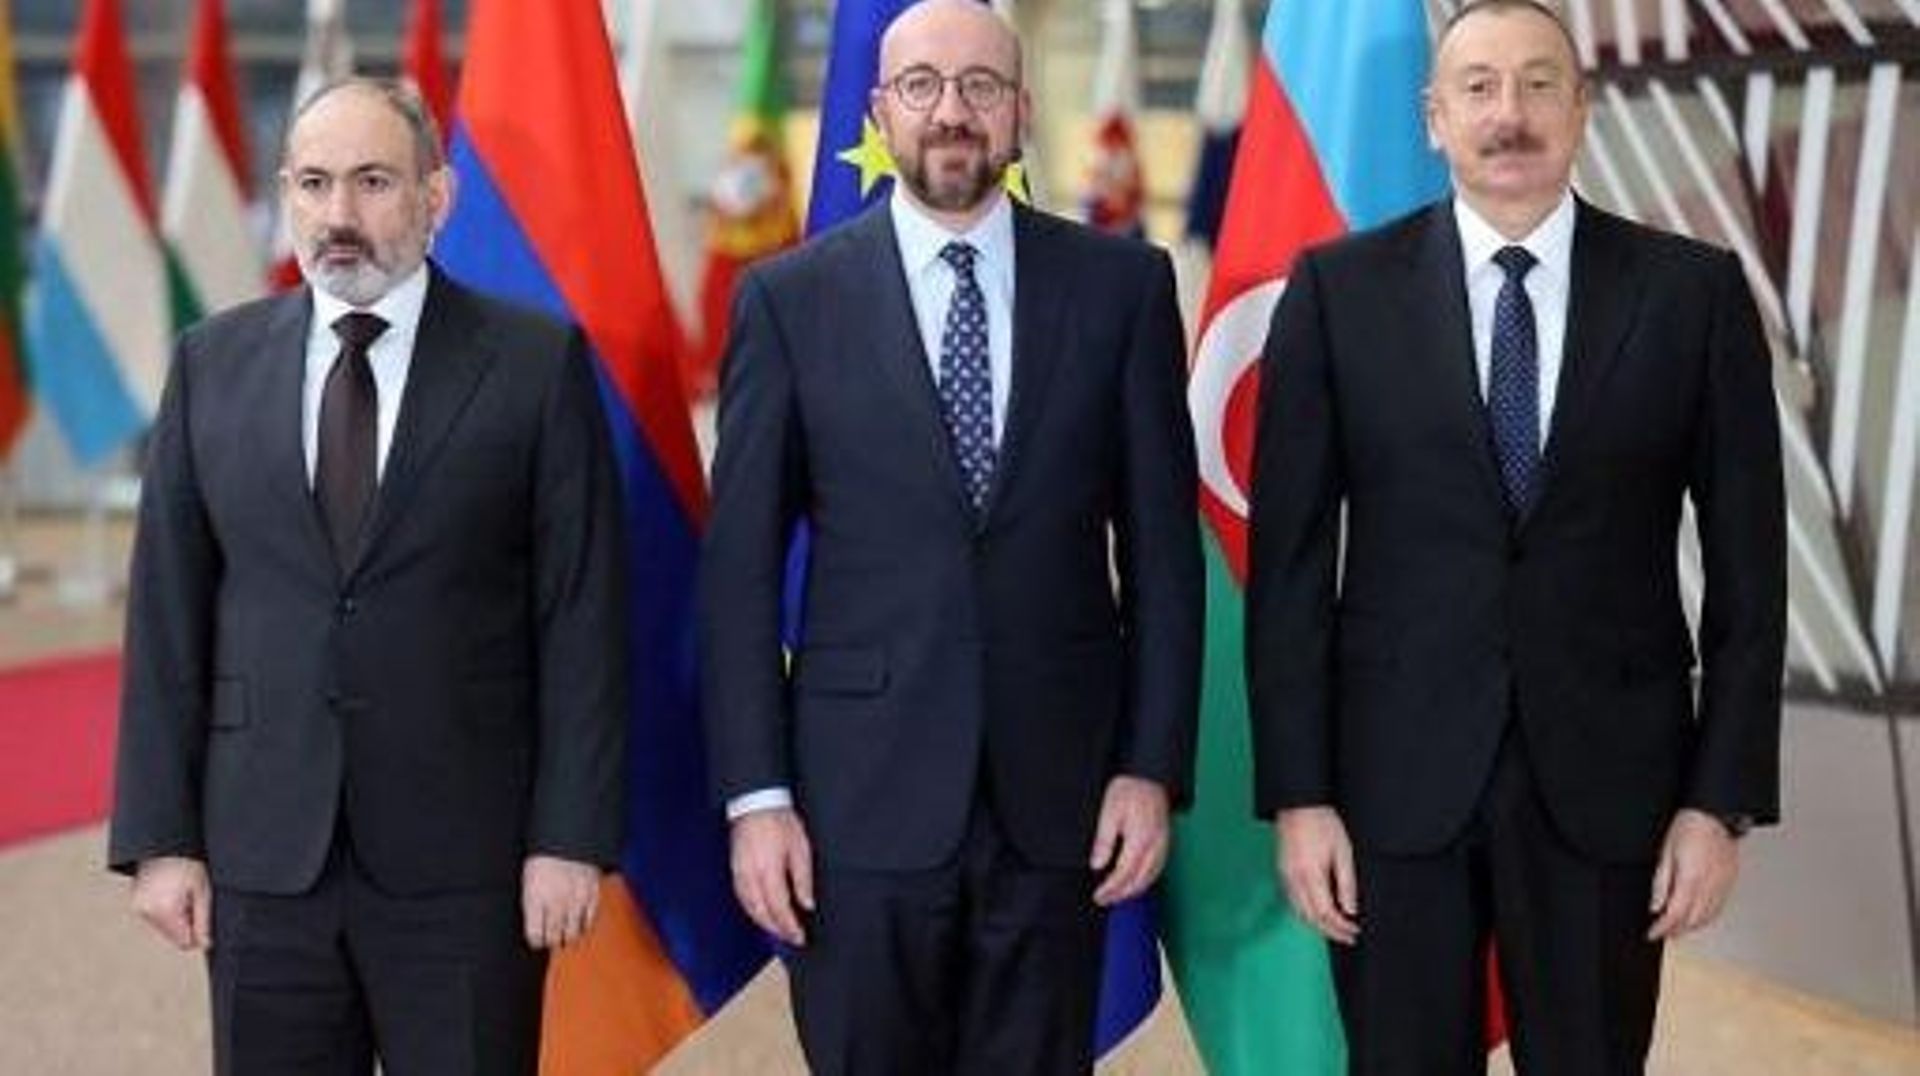 Conflit au Nagorny Karabakh - L'Arménie et l'Azerbaïdjan lancent de nouveaux pourparlers de paix